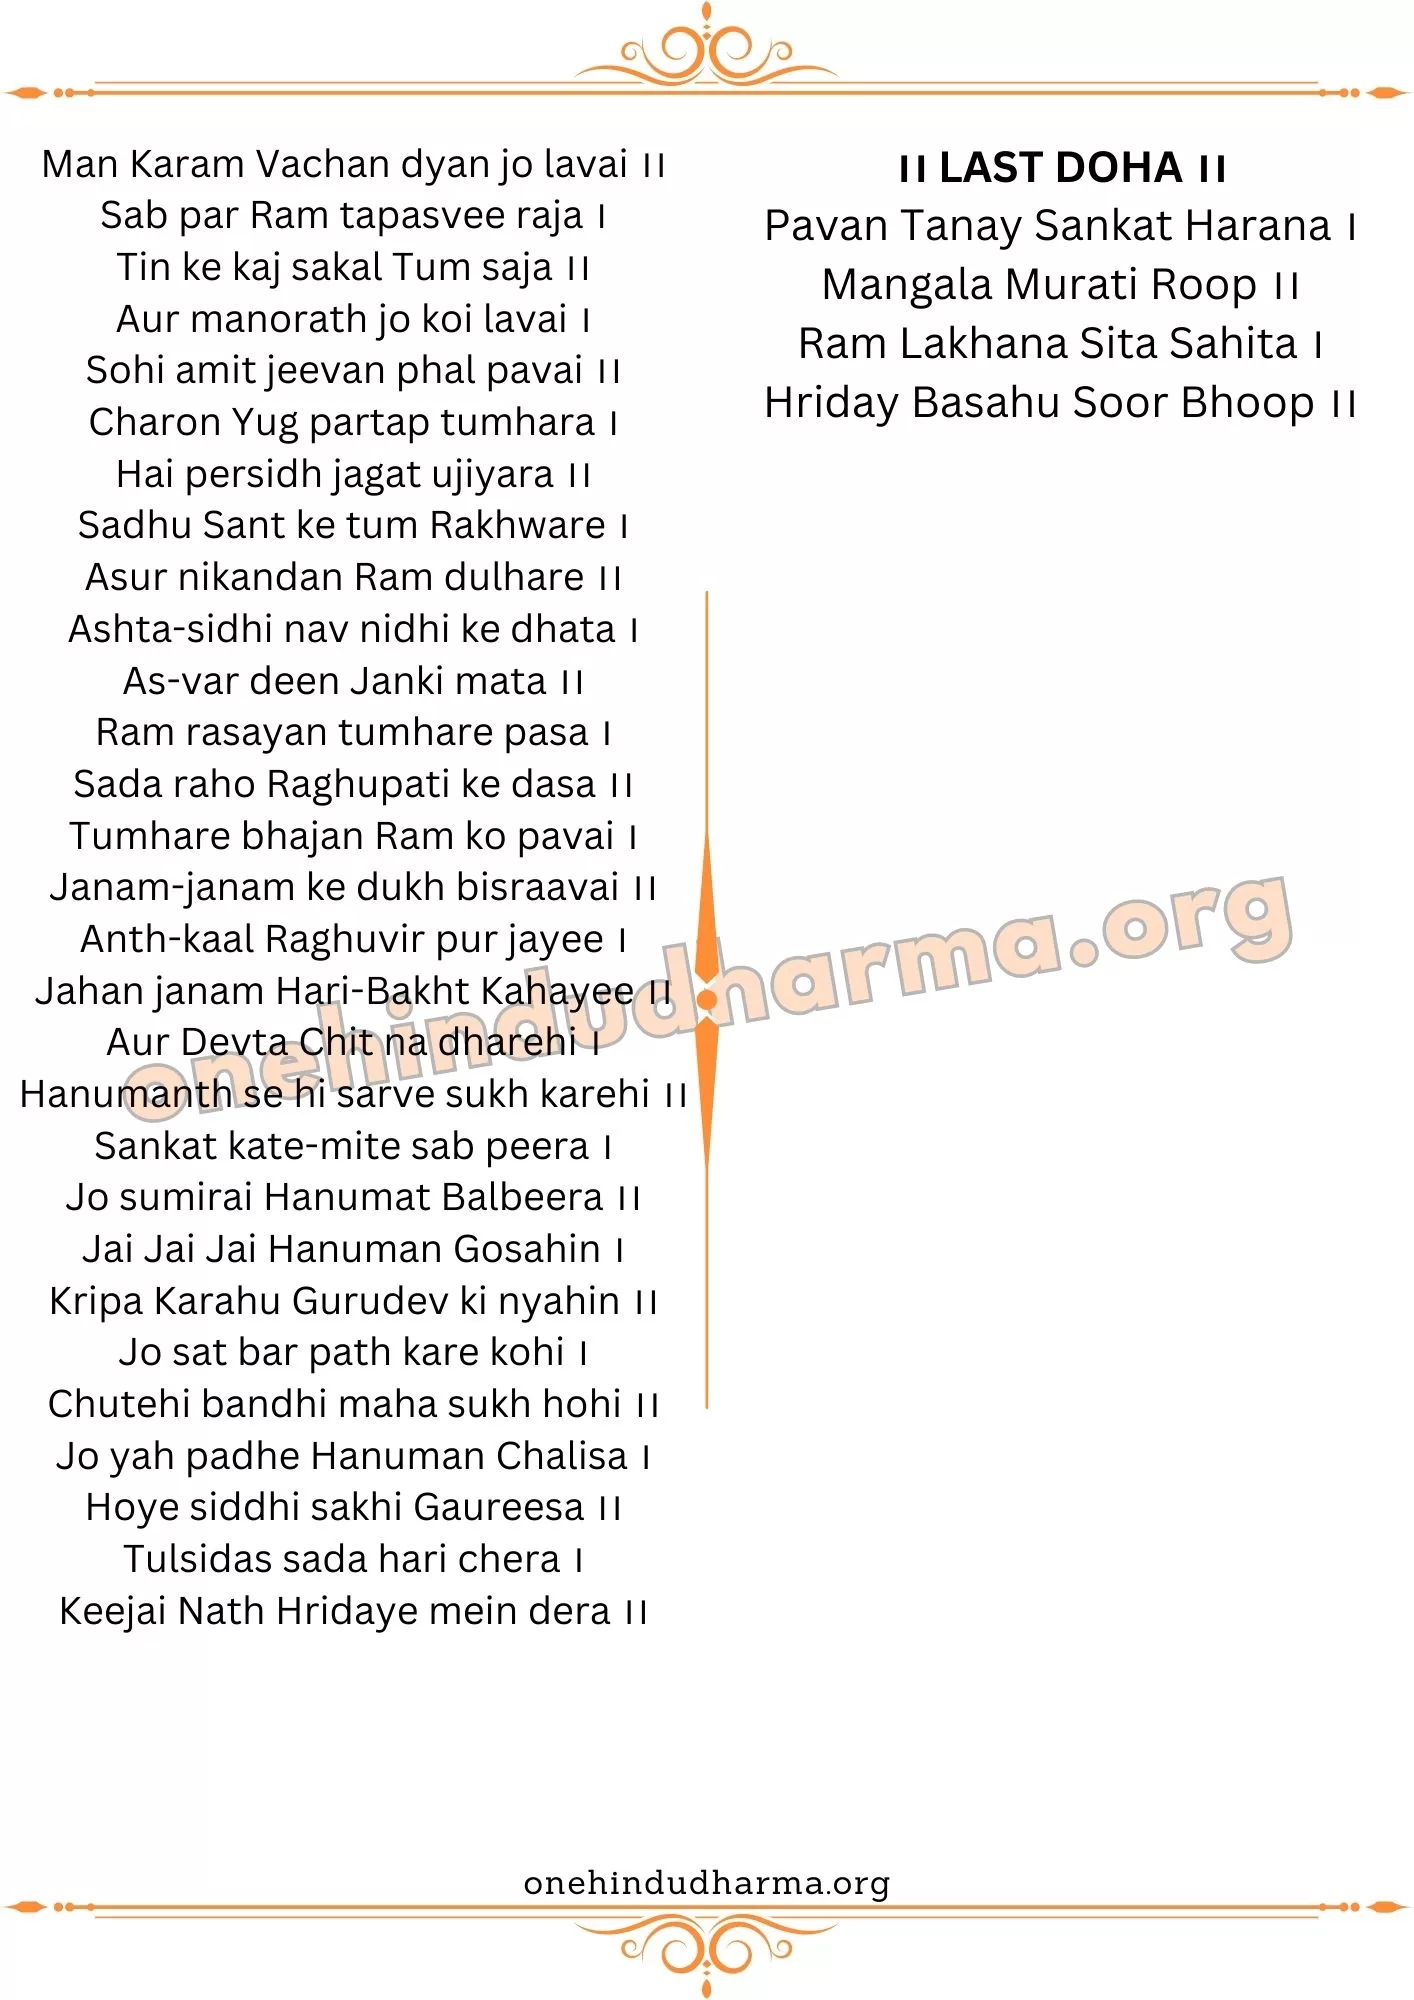 Hanuman Chalisa Lyrics In English